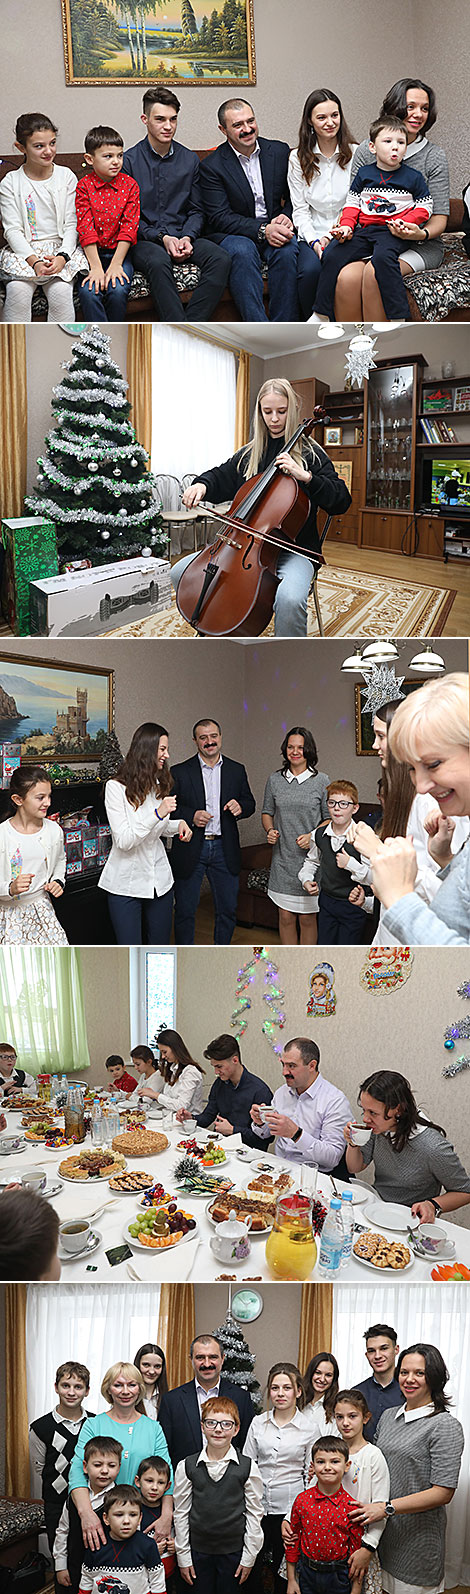 Виктор Лукашенко поздравил воспитанников детского дома семейного типа в Оршанском районе